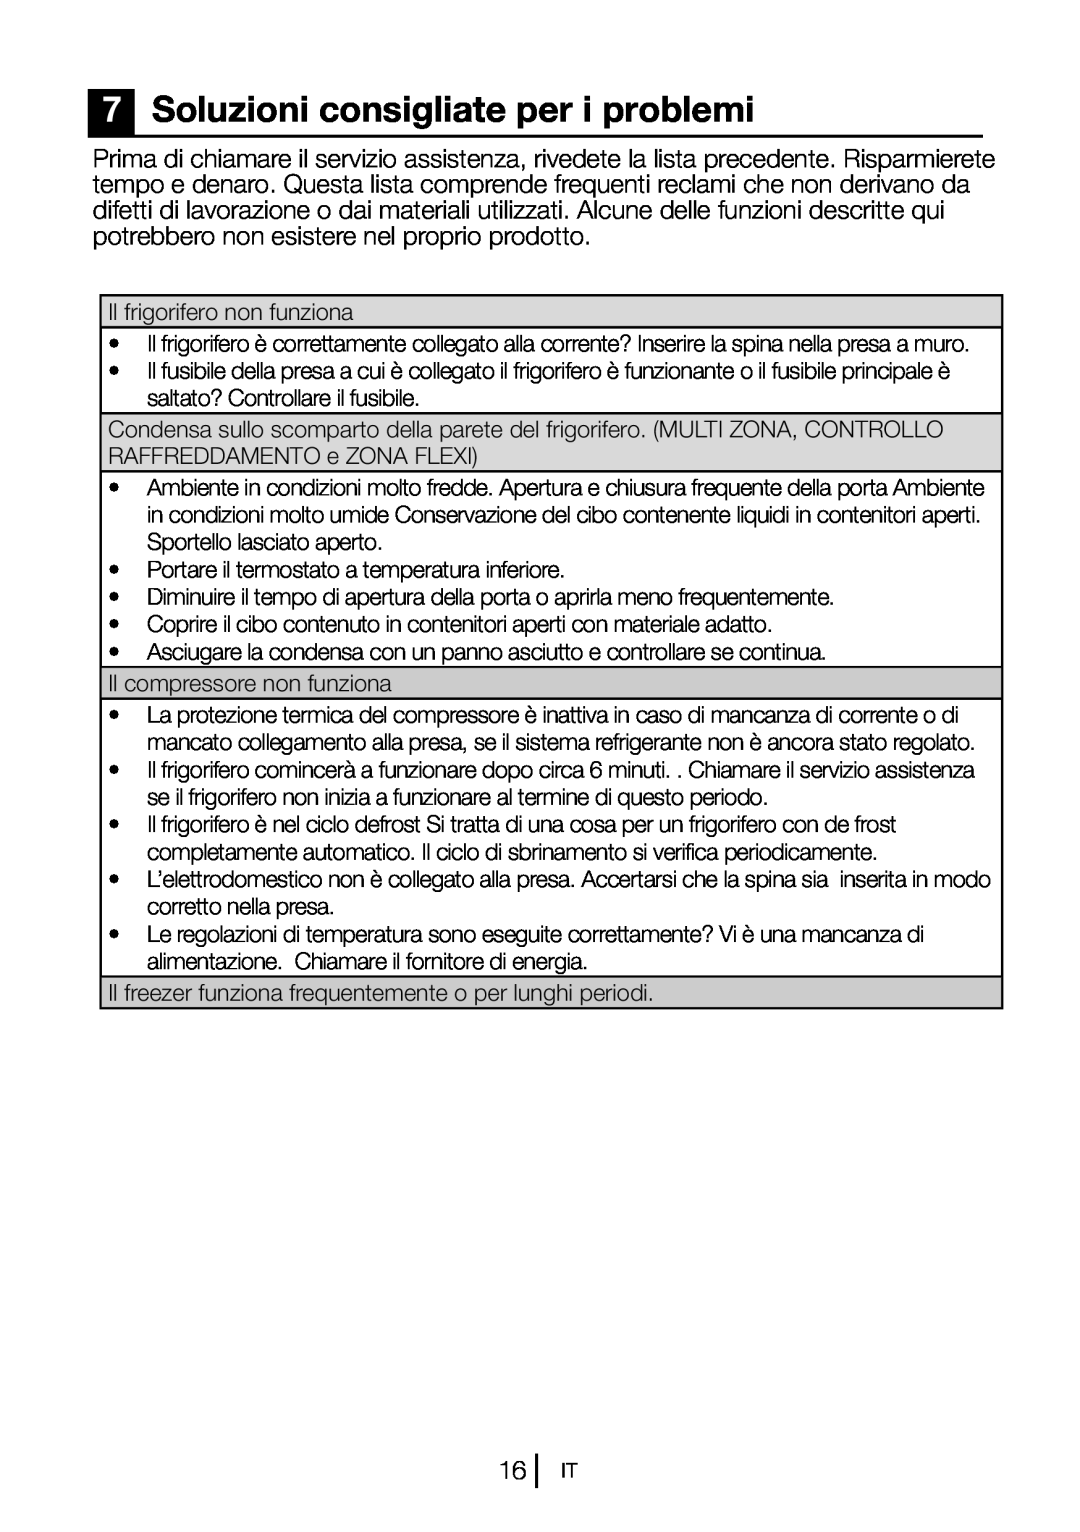 Blomberg DSM 9651 A+ manual 7Soluzioni consigliate per i problemi 